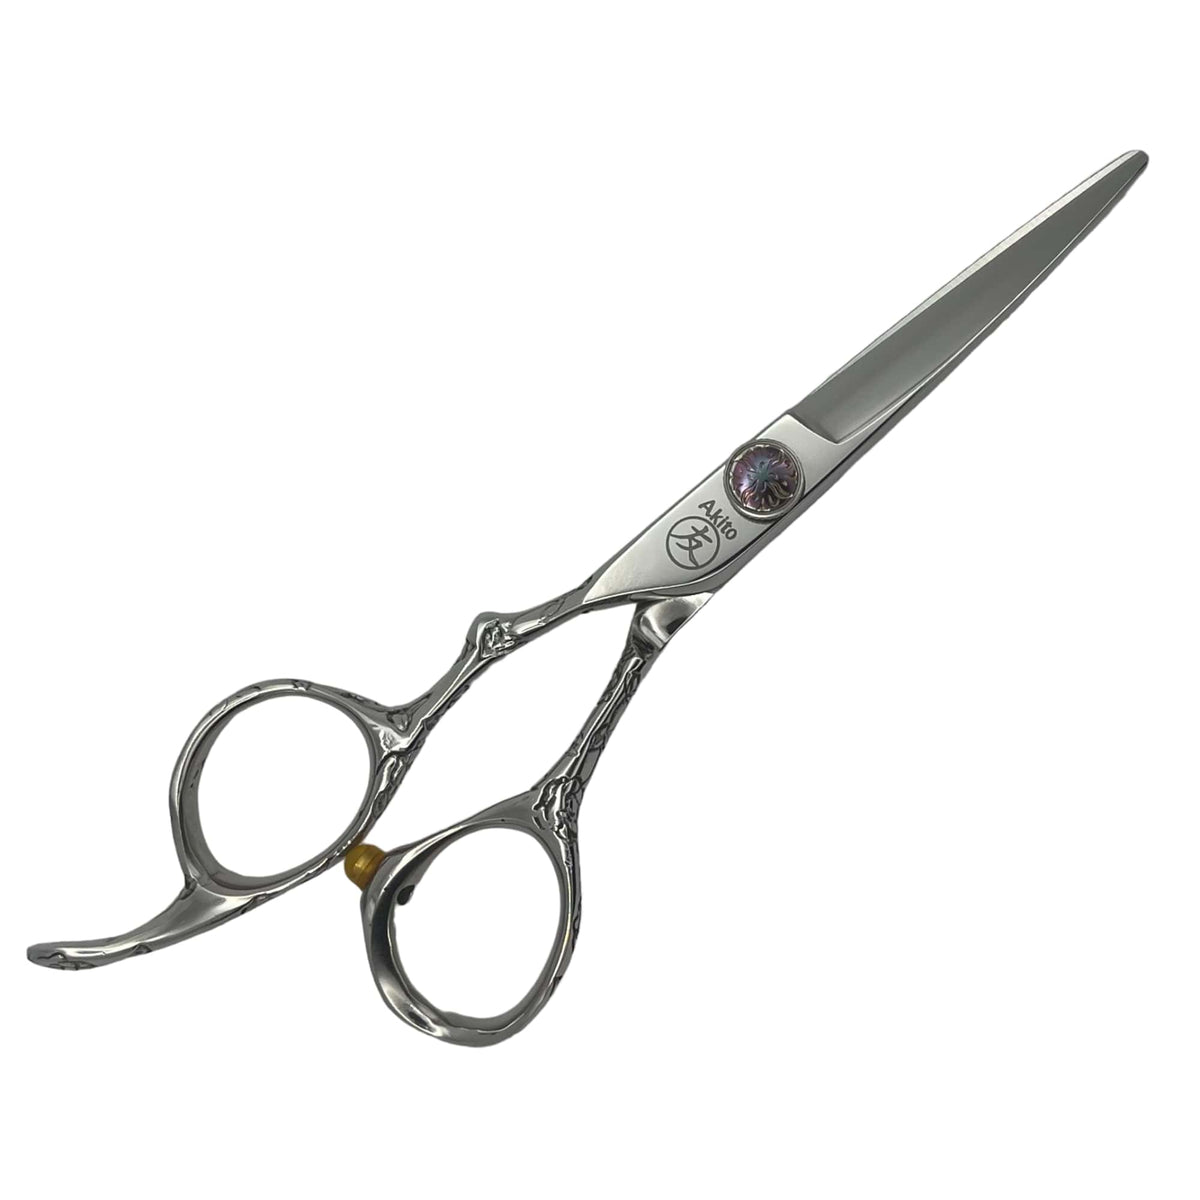 Sensei 5.5 inch left handed hairdressing scissors